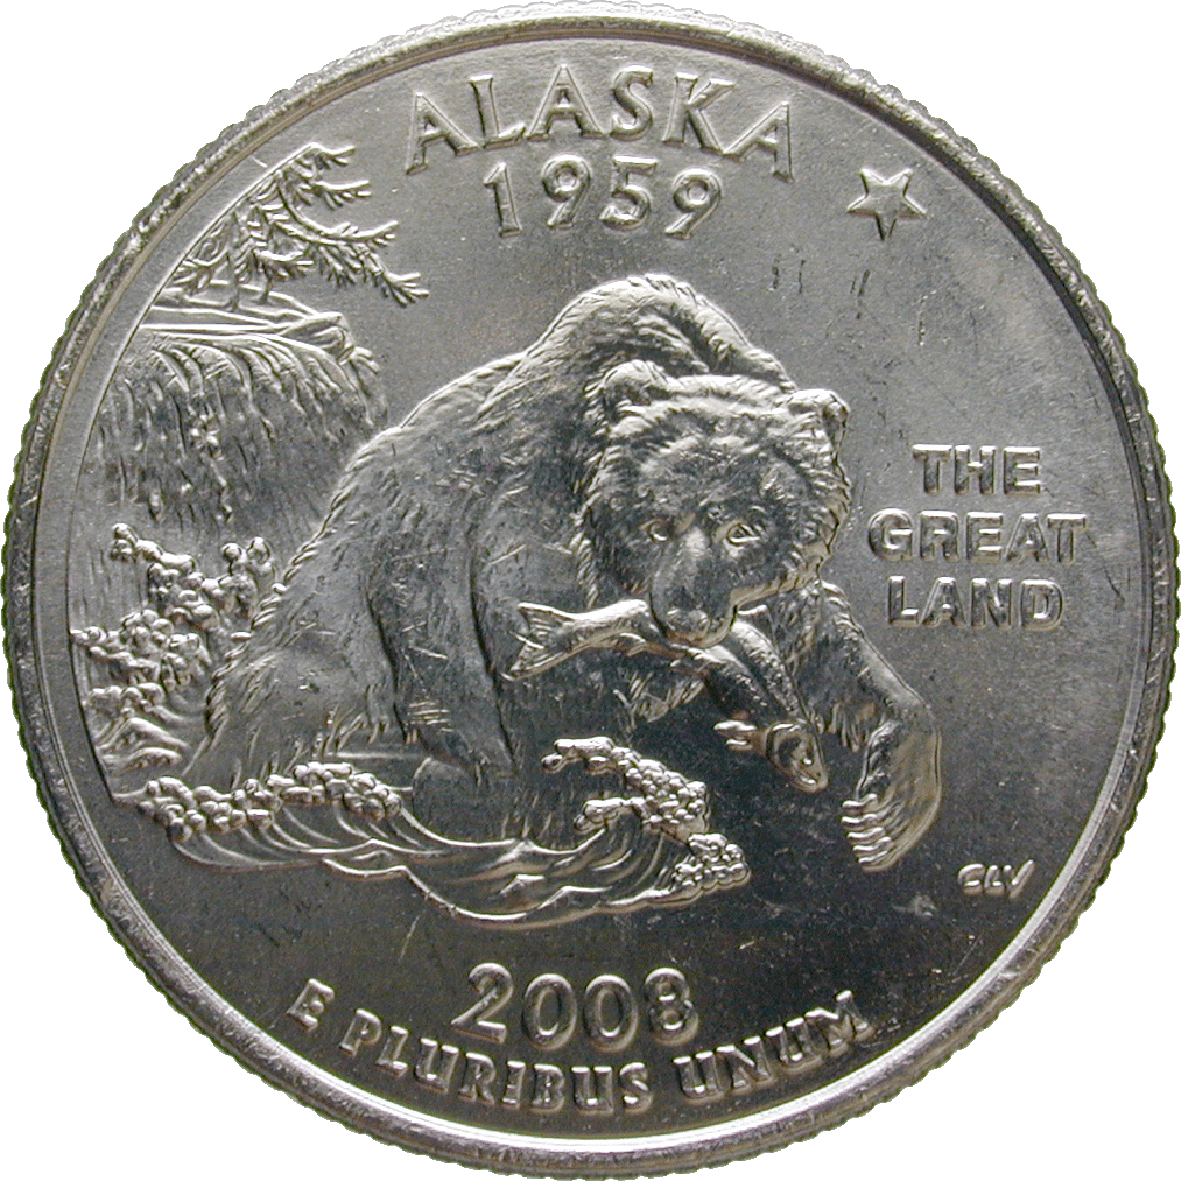 Vereinigte Staaten von Amerika, Quarter Dollar 2008 (reverse)